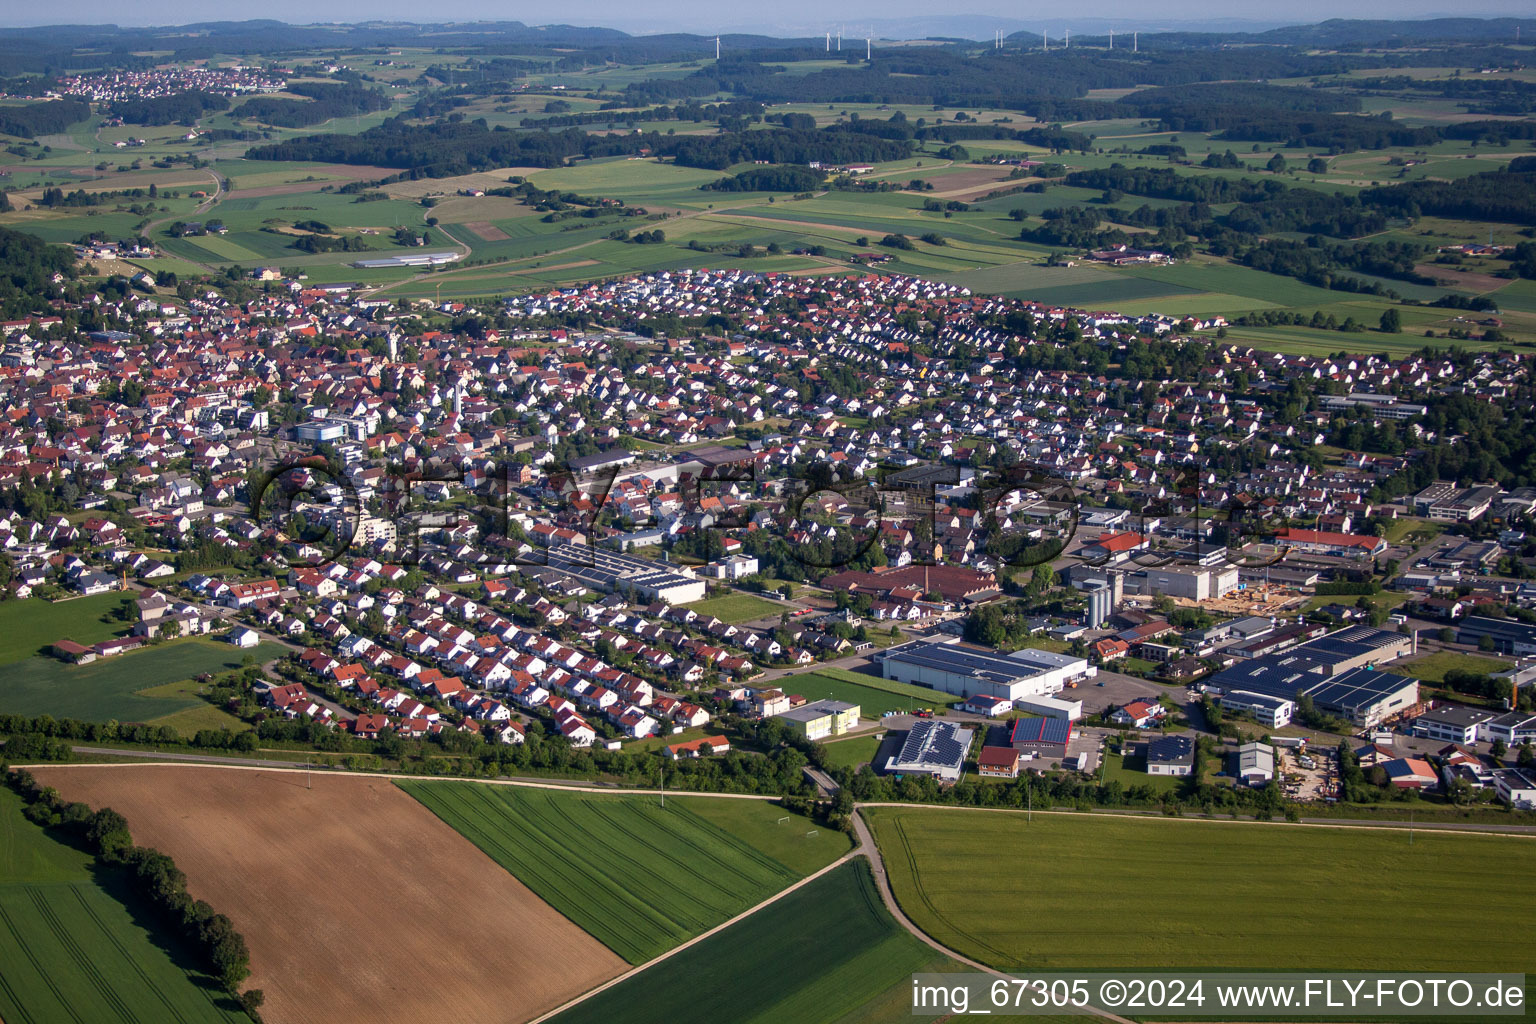 Luftbild von Dorf - Ansicht am Rande von landwirtschaftlichen Feldern und Nutzflächen in Laichingen im Bundesland Baden-Württemberg, Deutschland